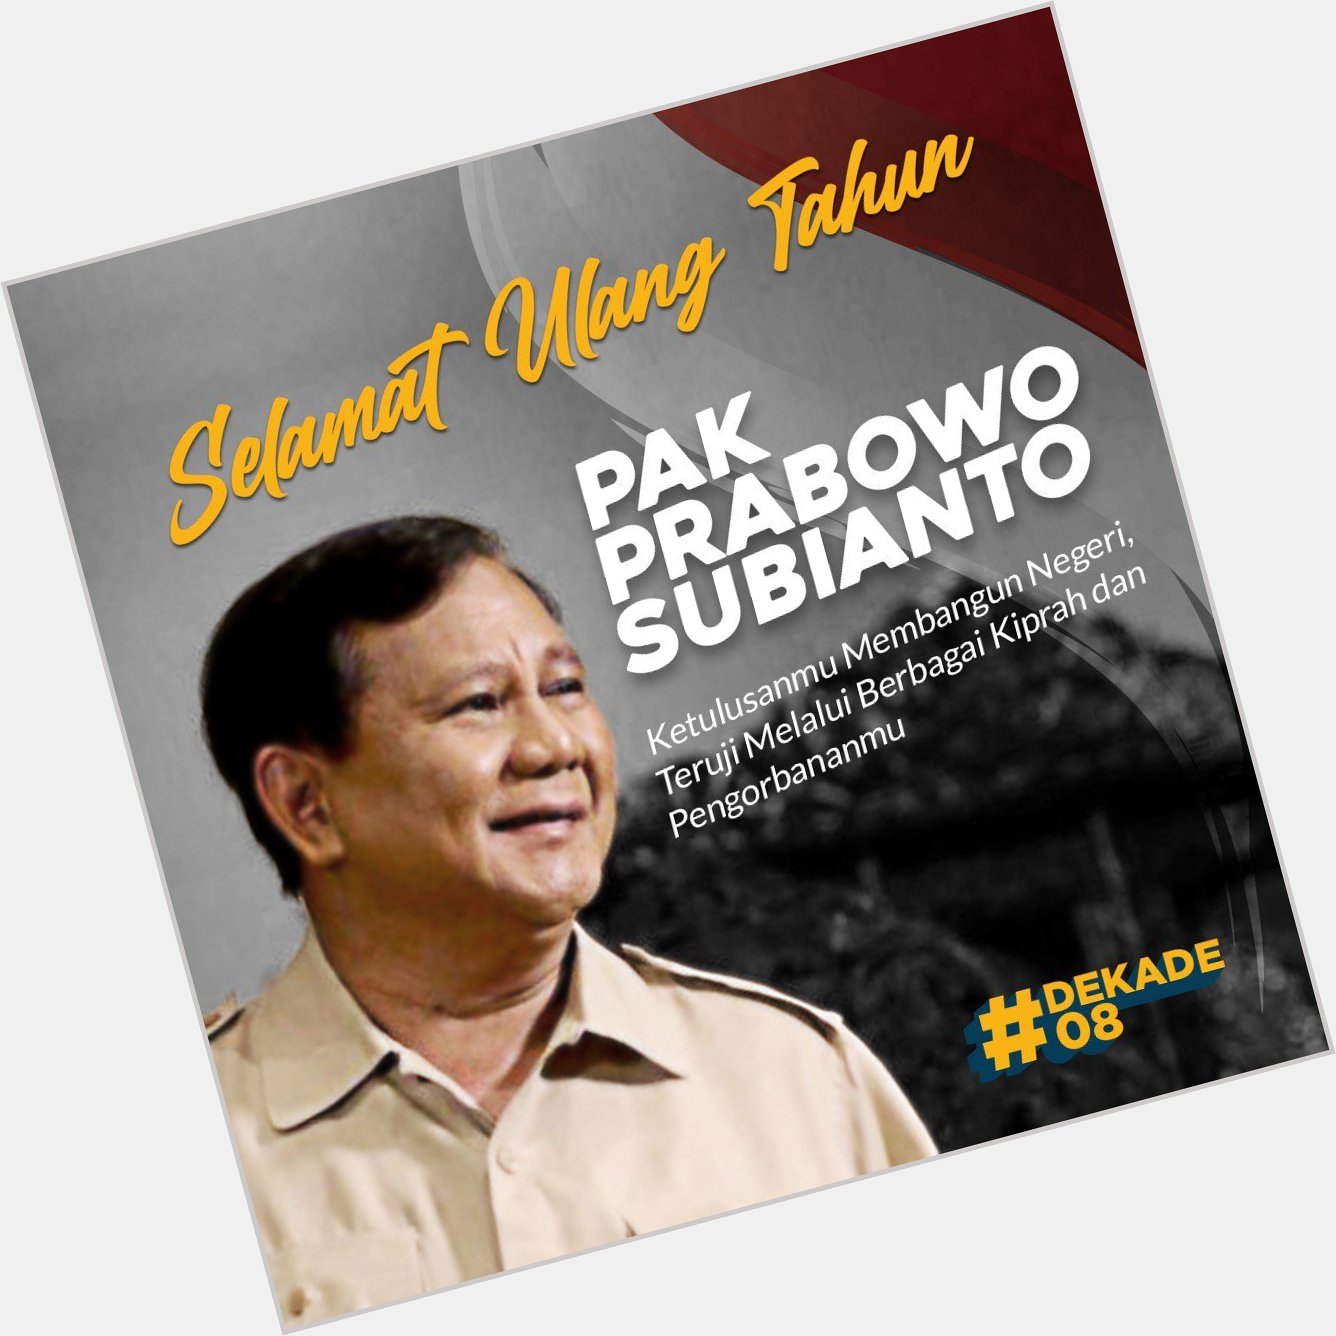 \"Happy birthday, the next Indonesia presiden Prabowo Subianto,\". Mending Prabowo  dekade08